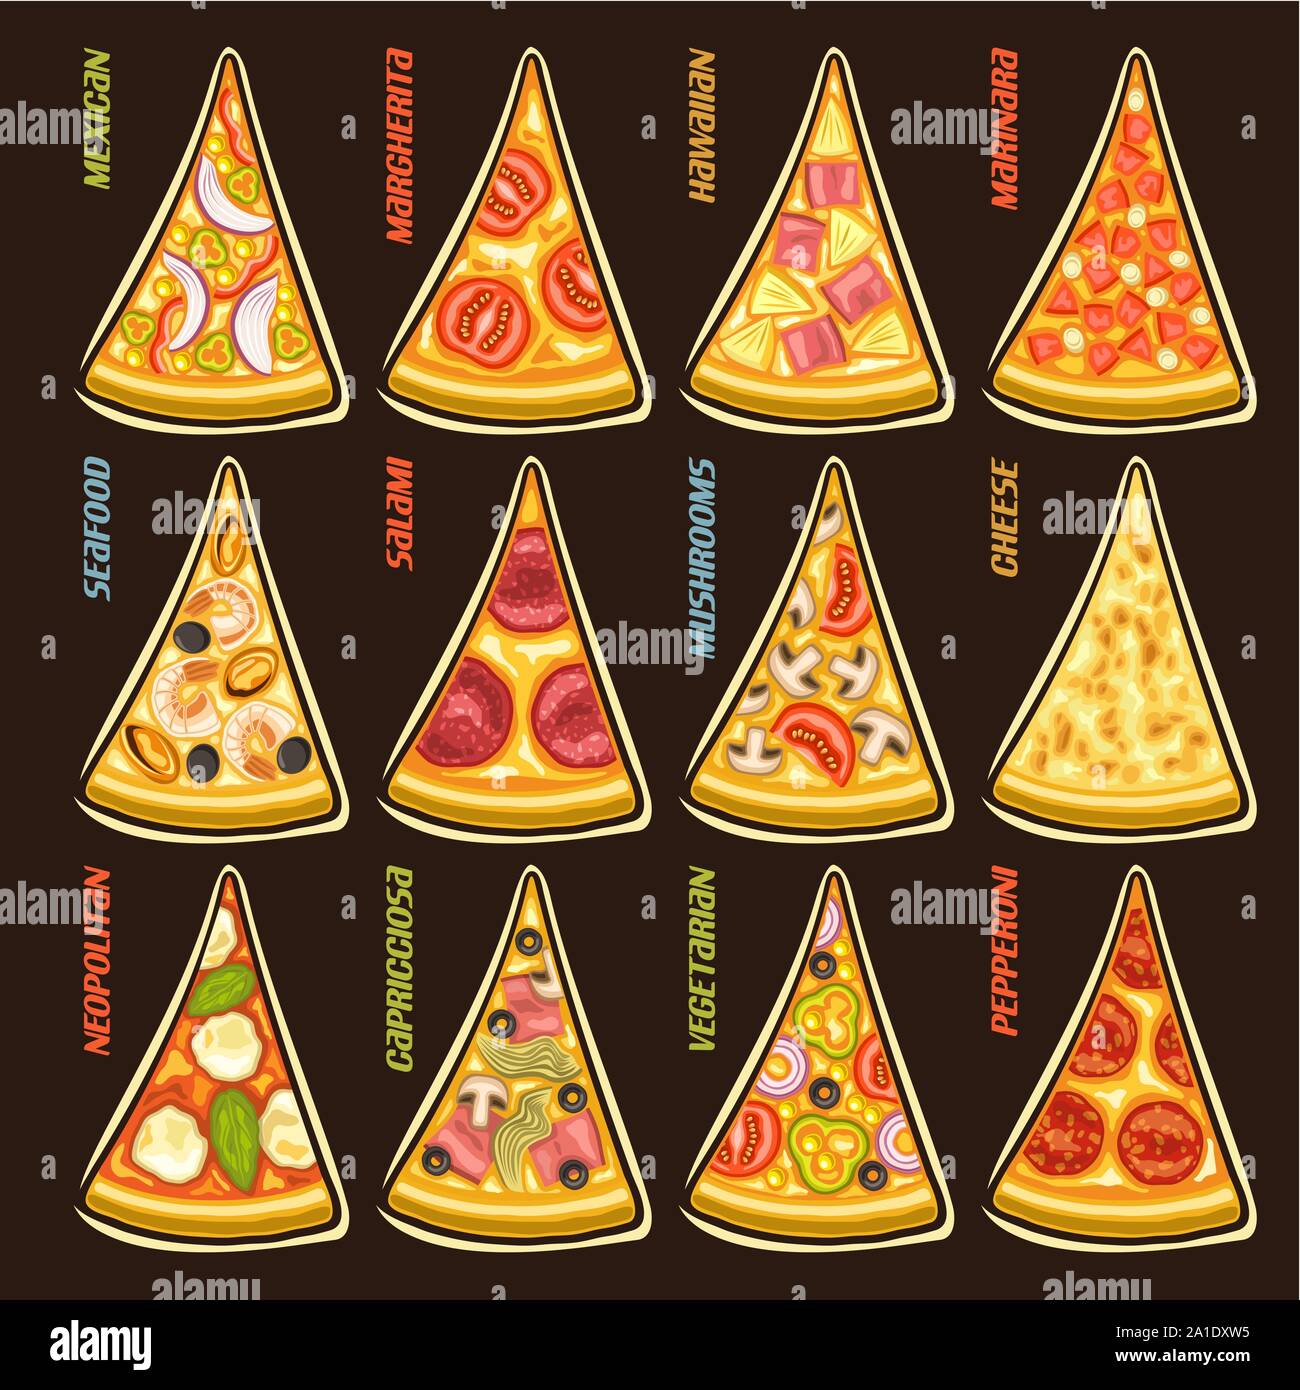 Conjunto Vector rebanadas de la pizza italiana: 12 etiquetas para pizzería menú con texto de título, pedazos triangulares de diferentes tipos de pizza original vista superior con fon Ilustración del Vector